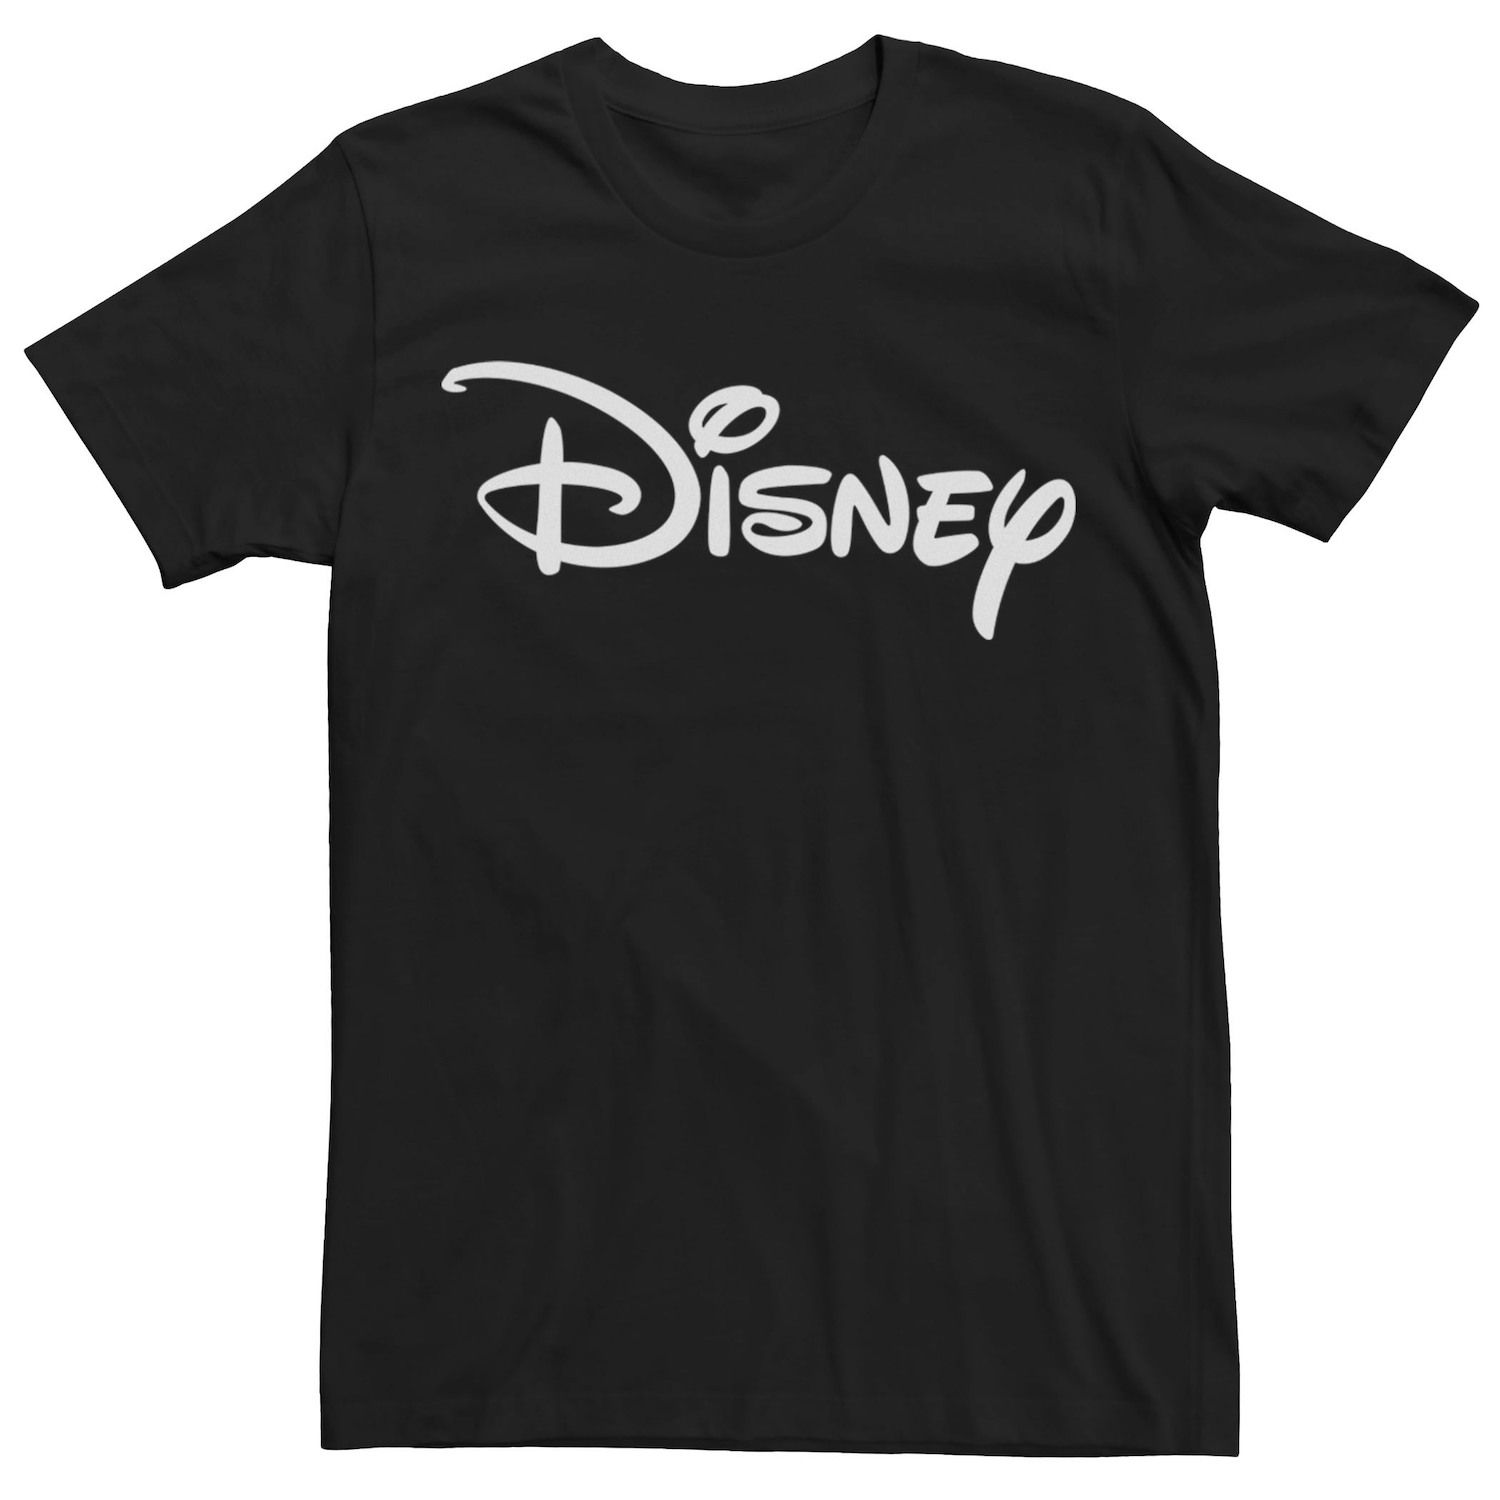 Мужская базовая футболка с логотипом Disney